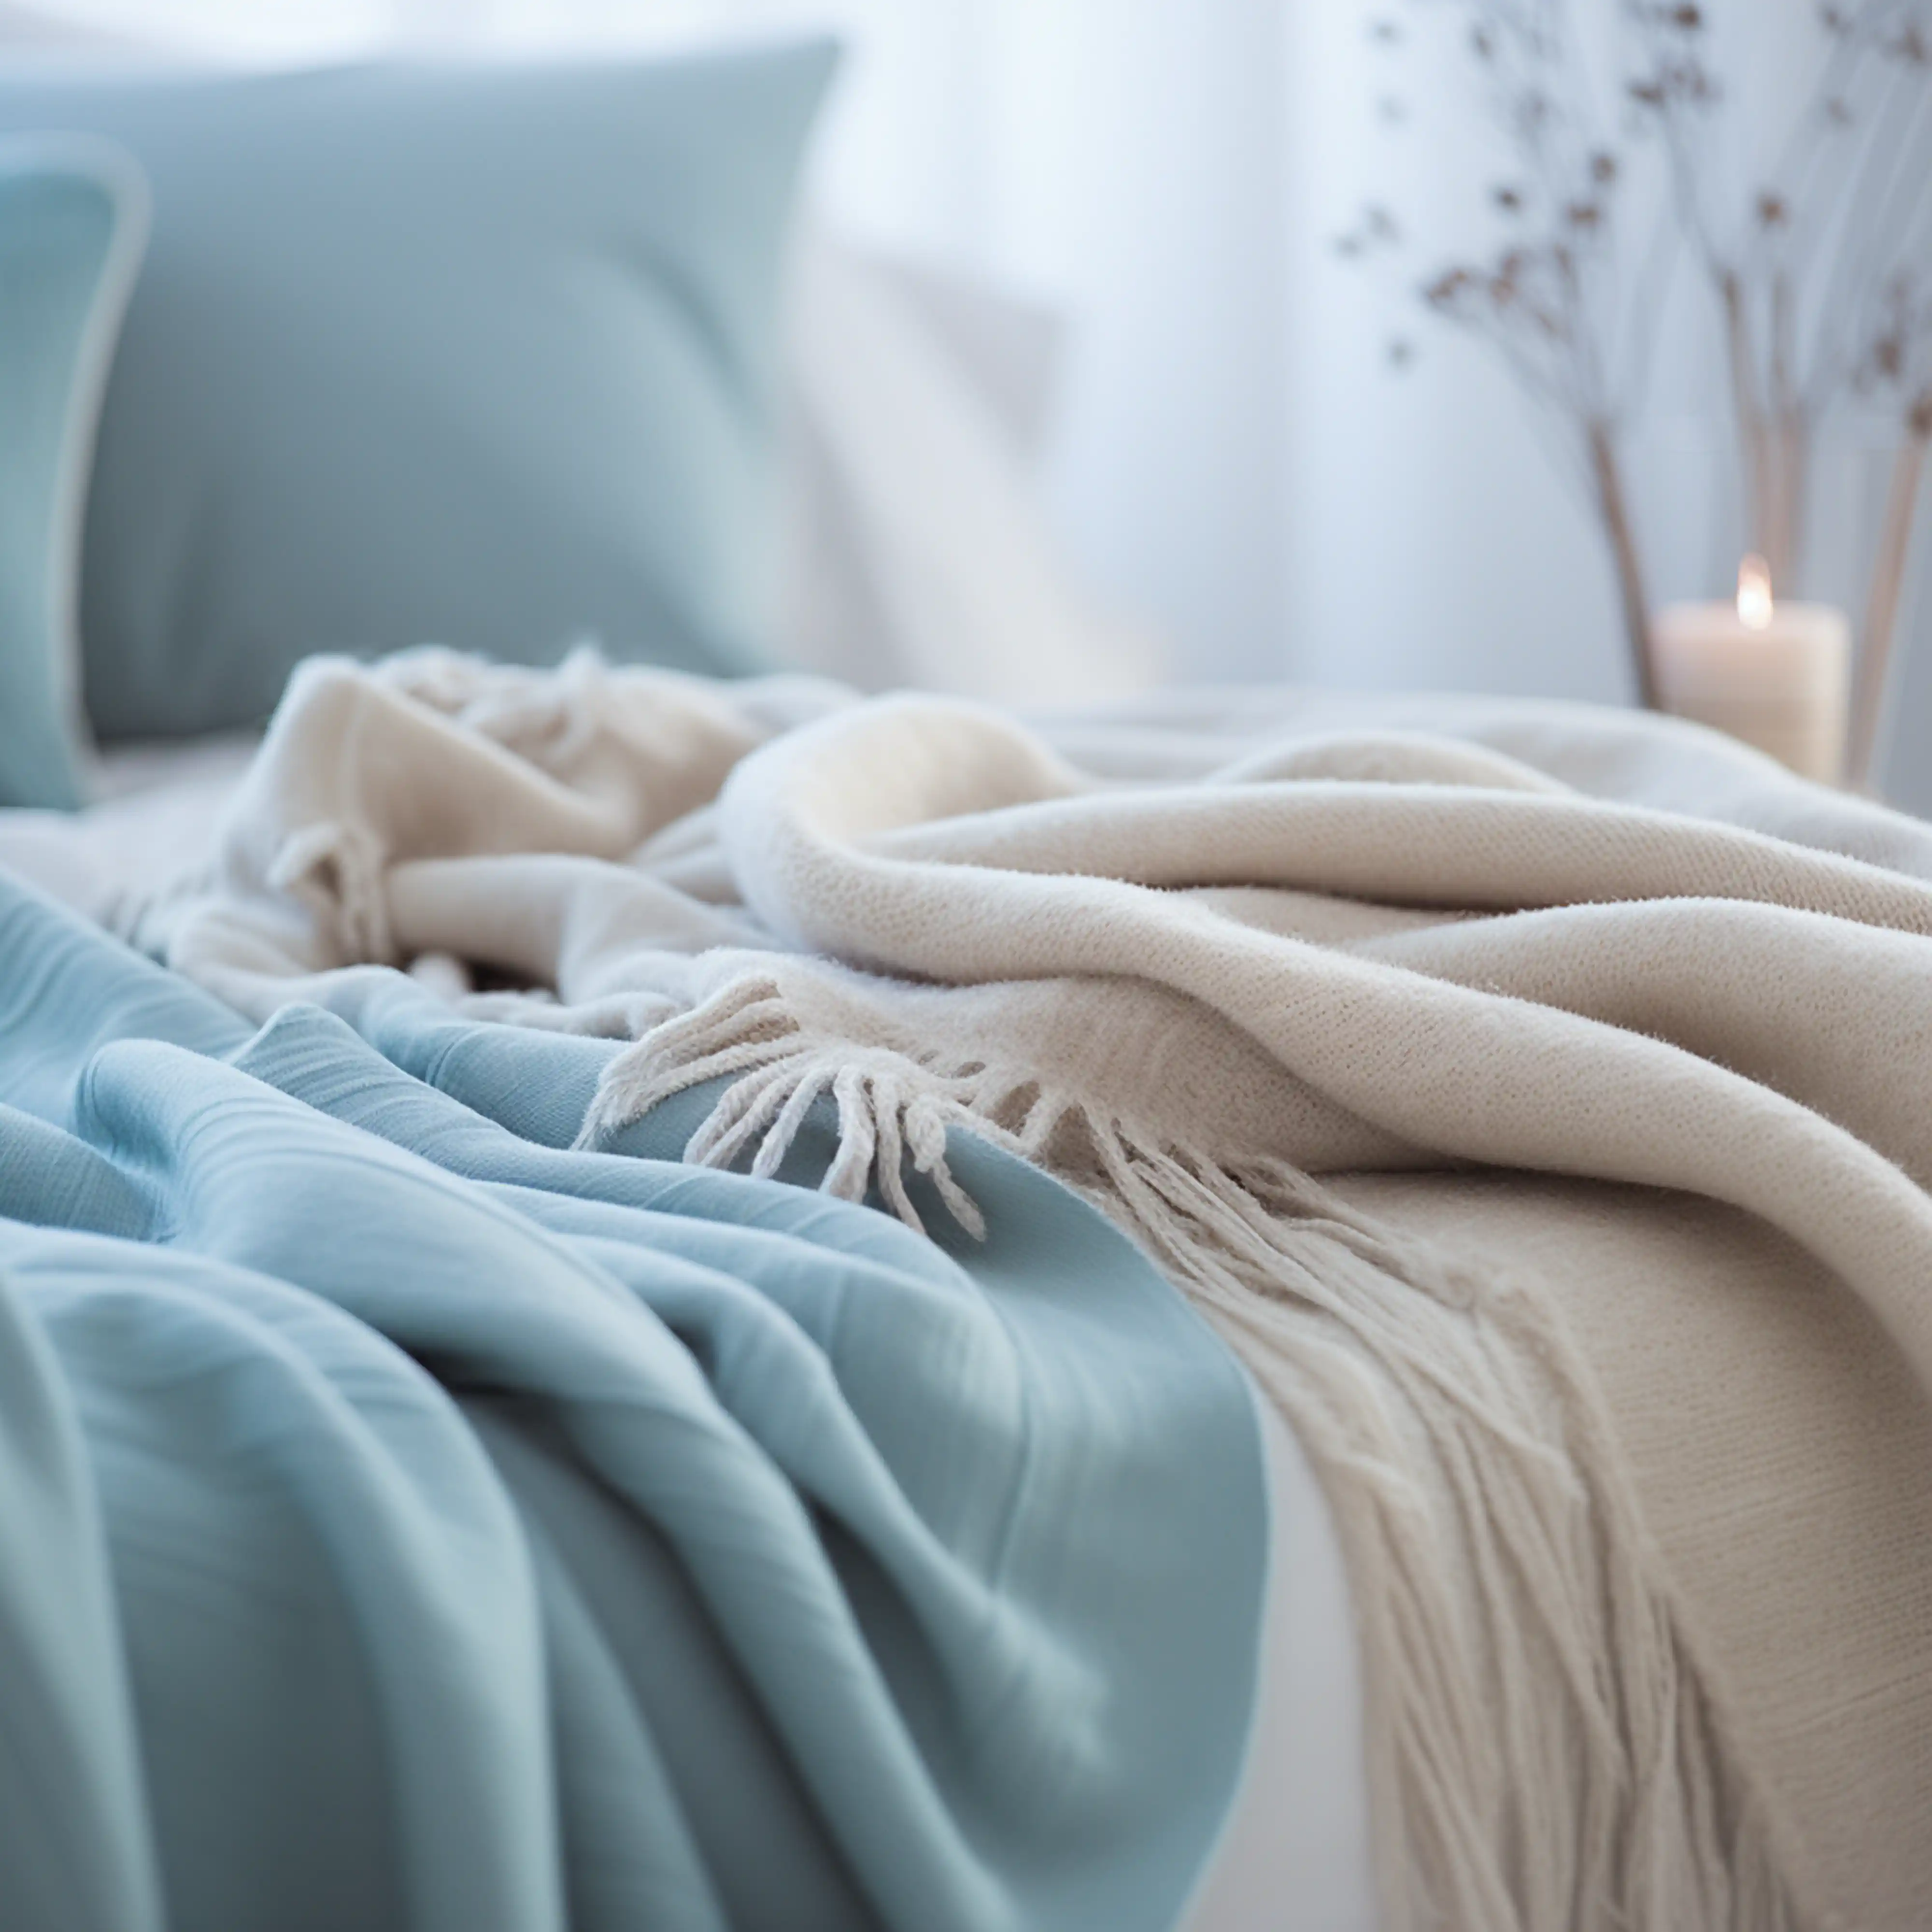 Chambre confortable et accueillante avec literie bleu clair et couverture à franges crème, intérieur signé Sarah Brown Design